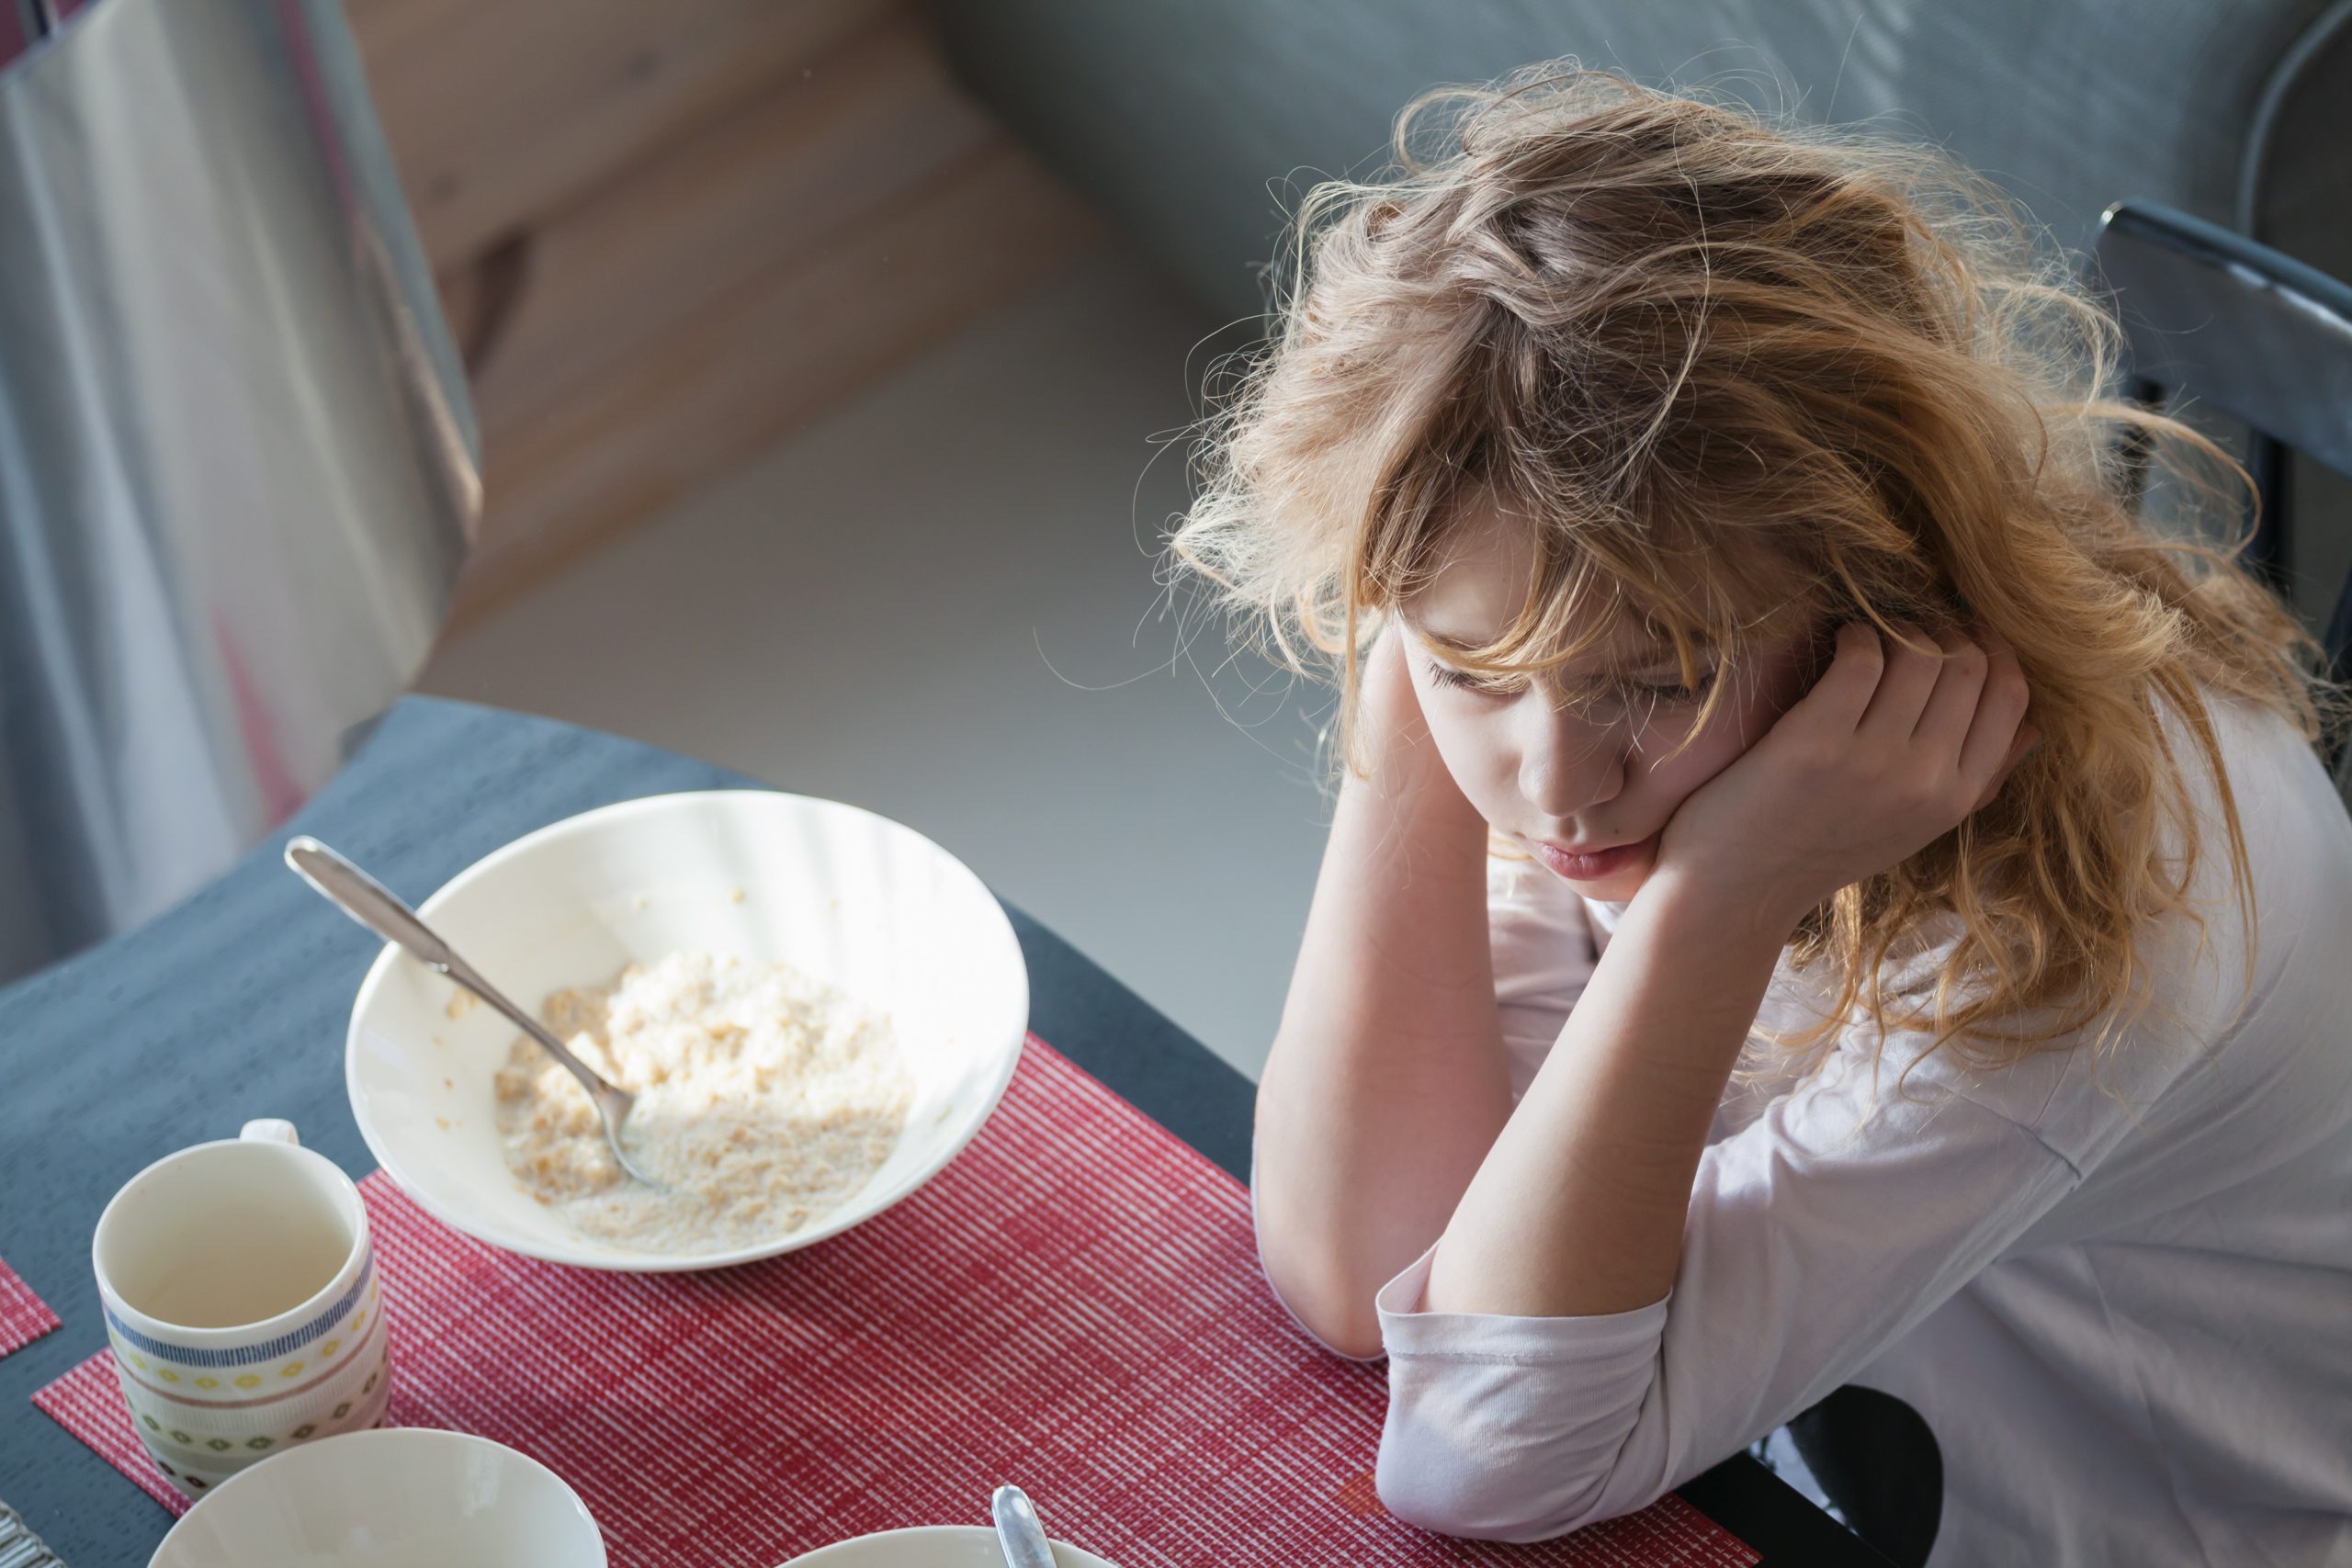 ¿Cómo identificar trastornos alimenticios en adolescentes? 12 señales que lo delatan